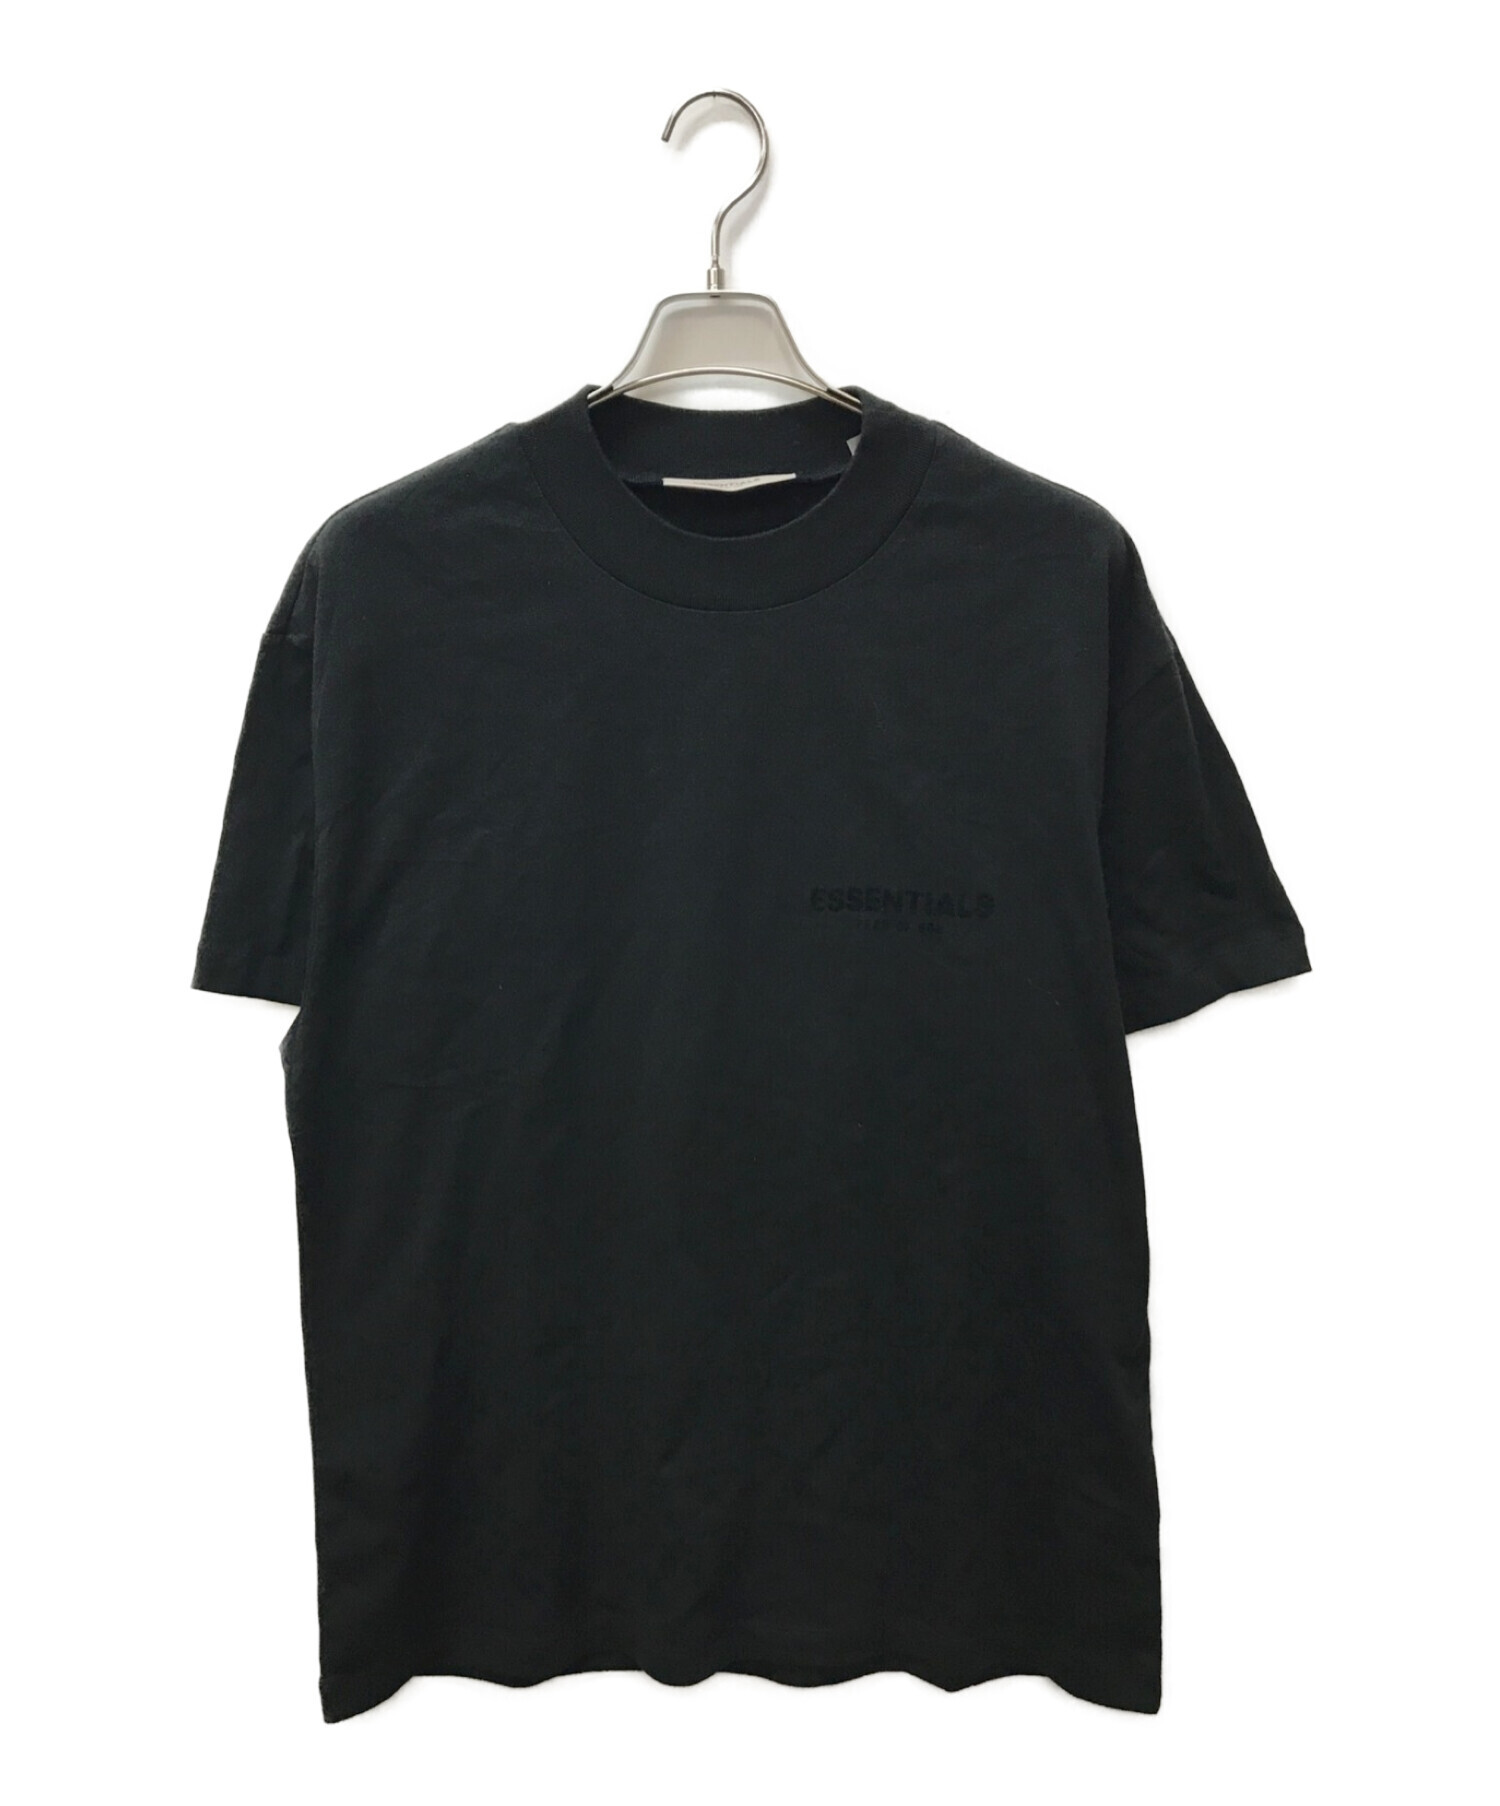 FOG ESSENTIALS バックロゴ Tシャツ ブラック / Mサイズ